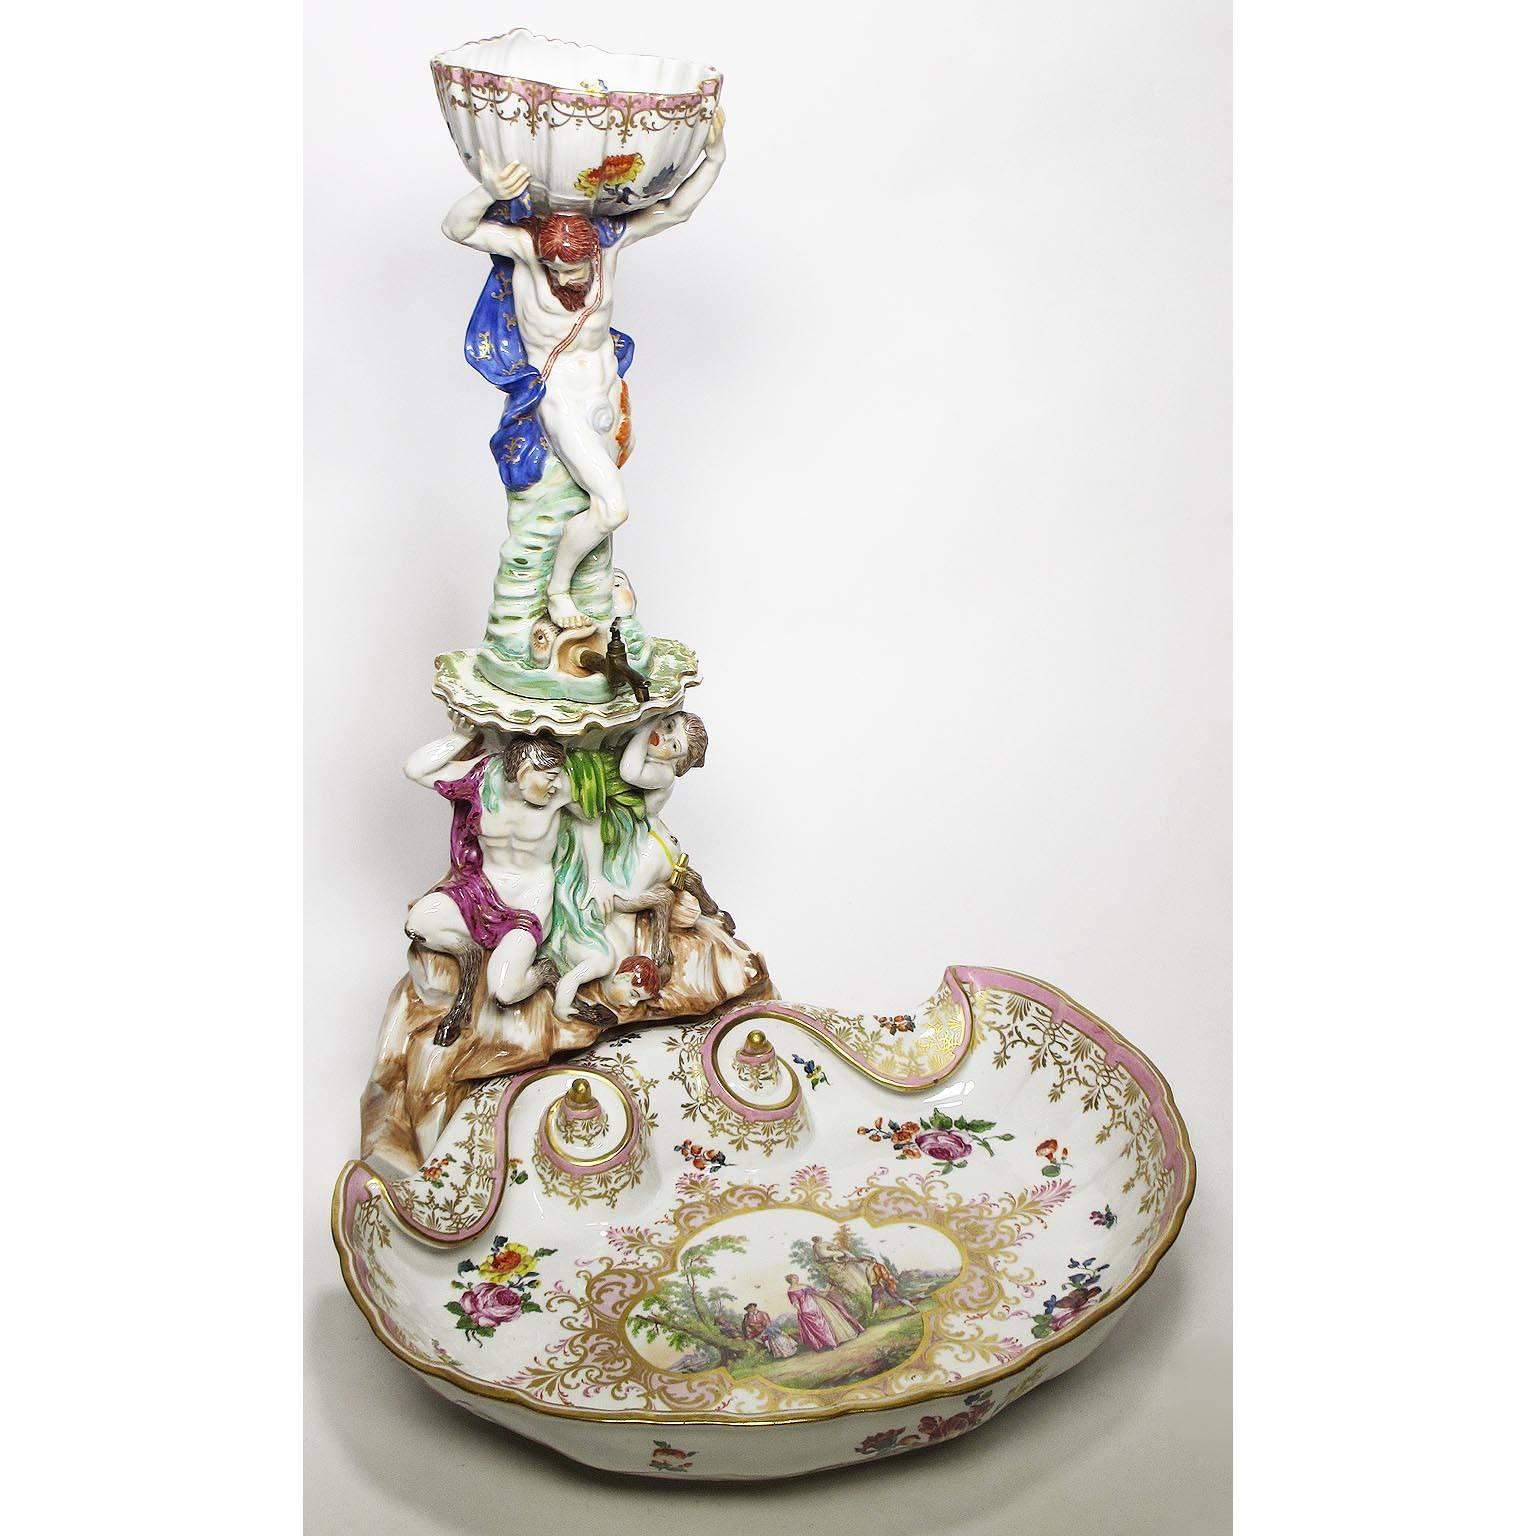 Une très belle et rare fontaine distributrice de liqueurs en porcelaine figurative allemande du 19e siècle. La fontaine allégorique en deux parties de style baroque représente un homme barbu debout, les bras levés tenant un socle en forme de